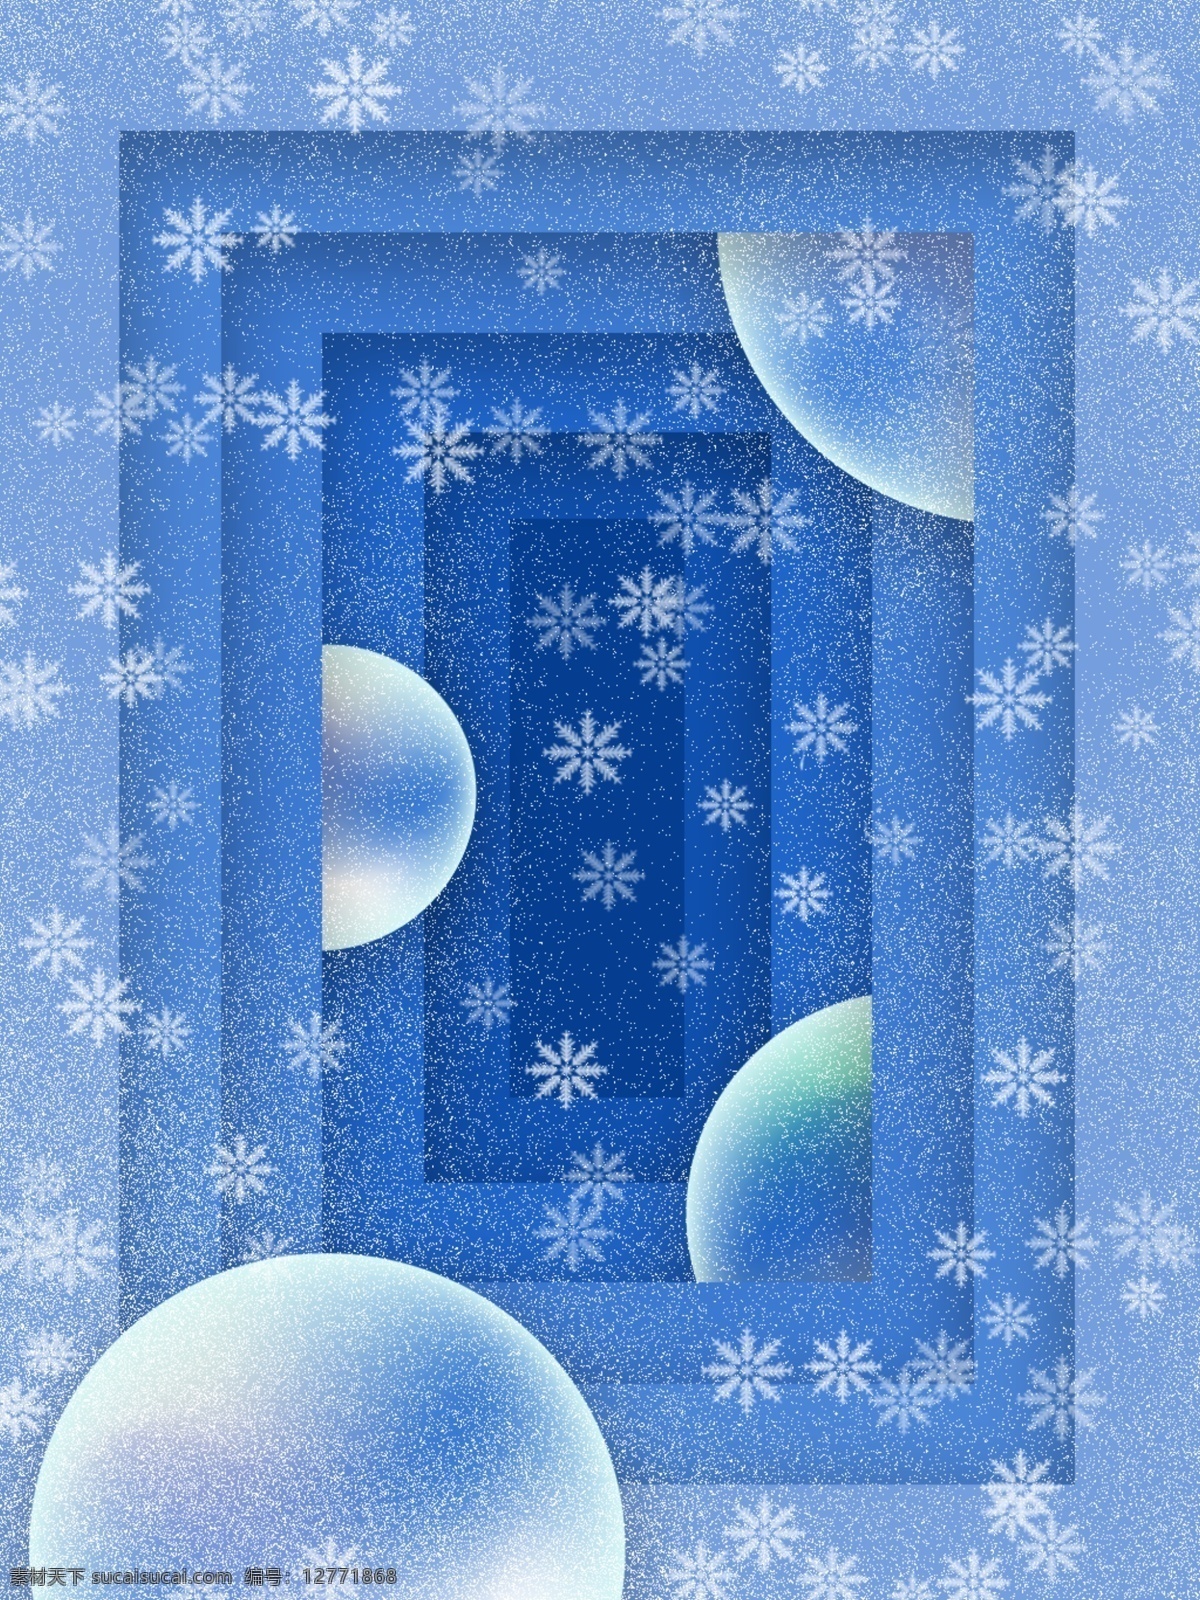 蓝色 冬季 下雪 剪纸 微 立体 效果 背景 雪花 雪花背景 3d球 剪纸效果